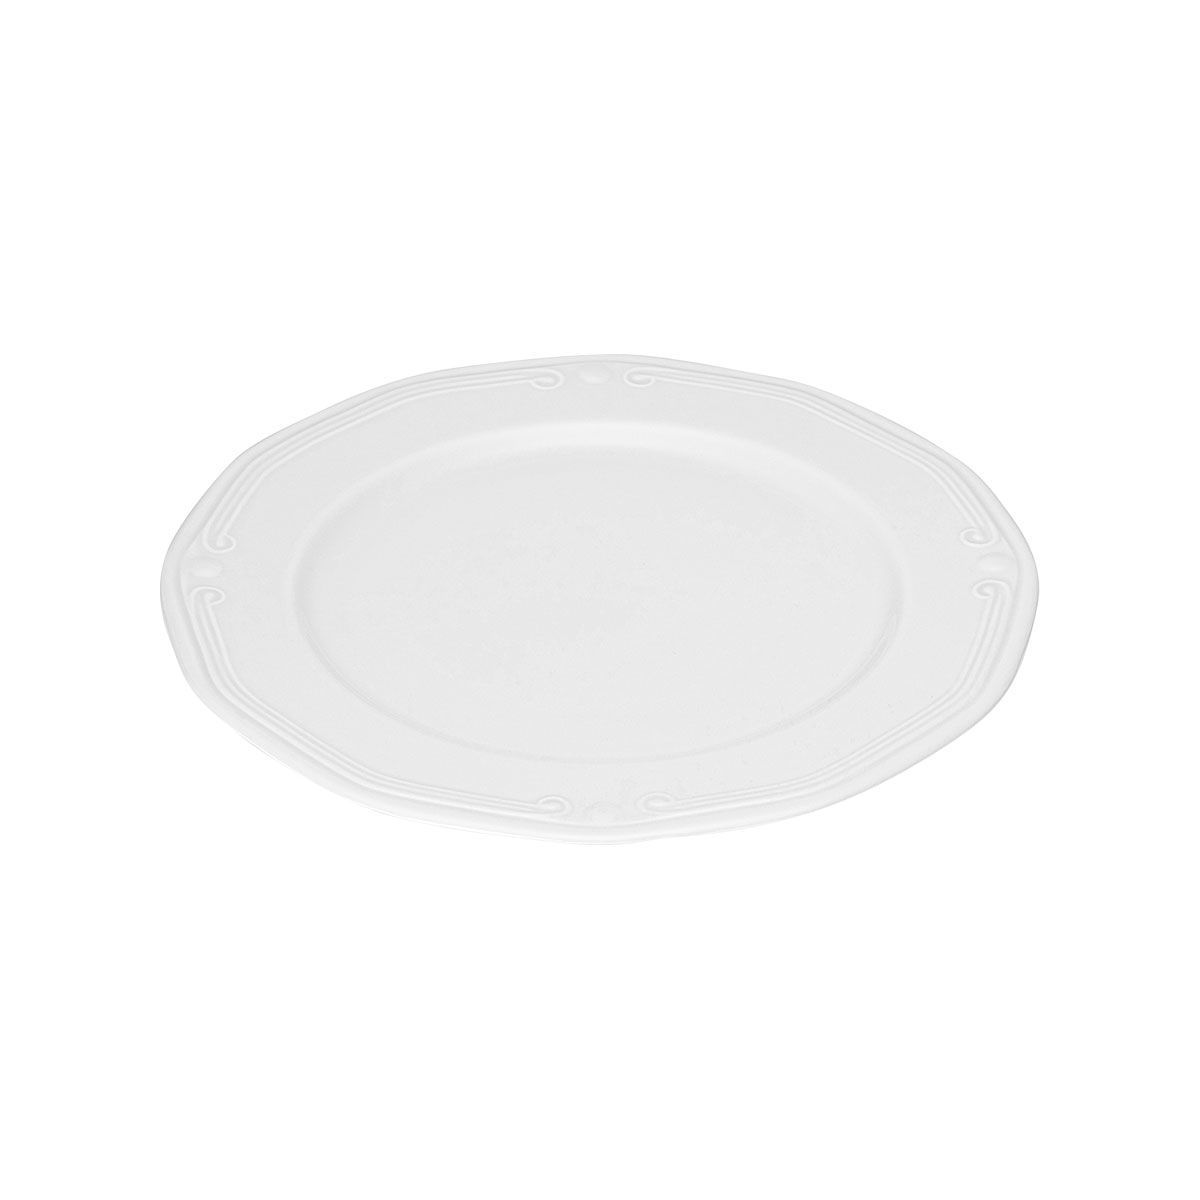 Πιάτο Ρηχό Πορσελάνης Ανάγλυφο Φ20cm Athénée White Estia 07-13448 - 0